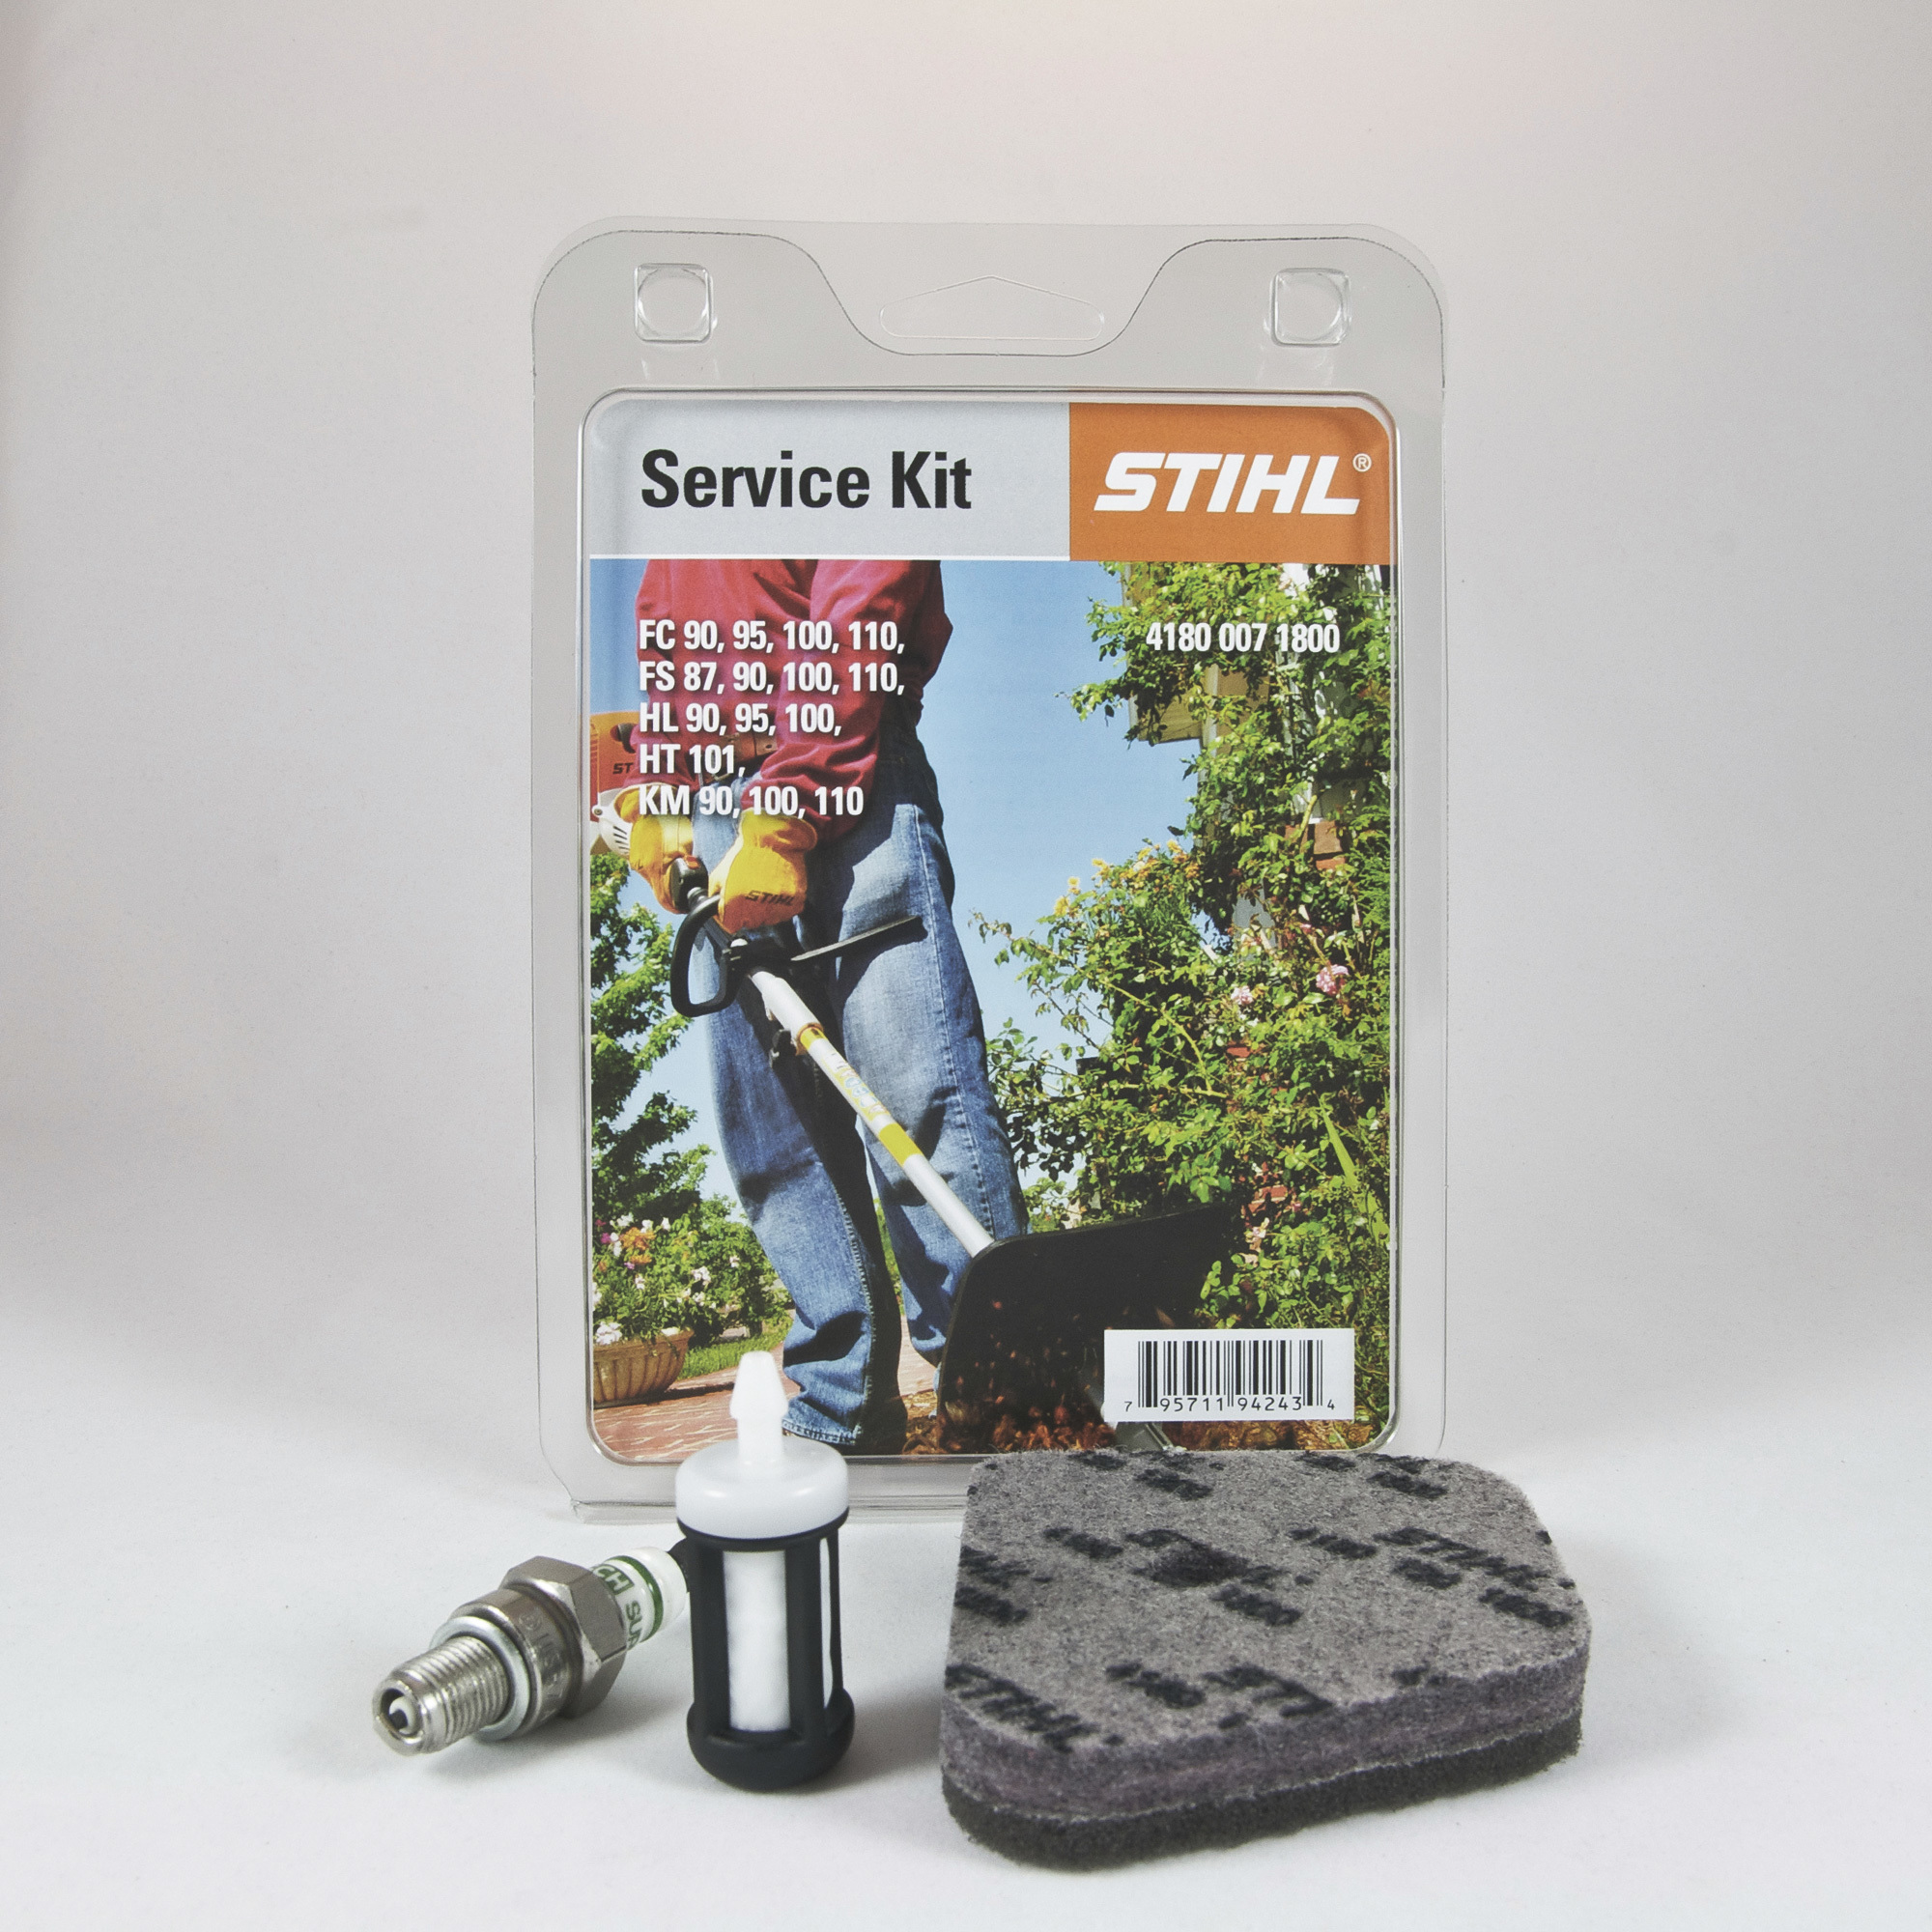 STIHL 4180 Trimmer Service Kit â Fits Trimmer Models FS 90, FS 110, KM 90, KM 110 and HT 101